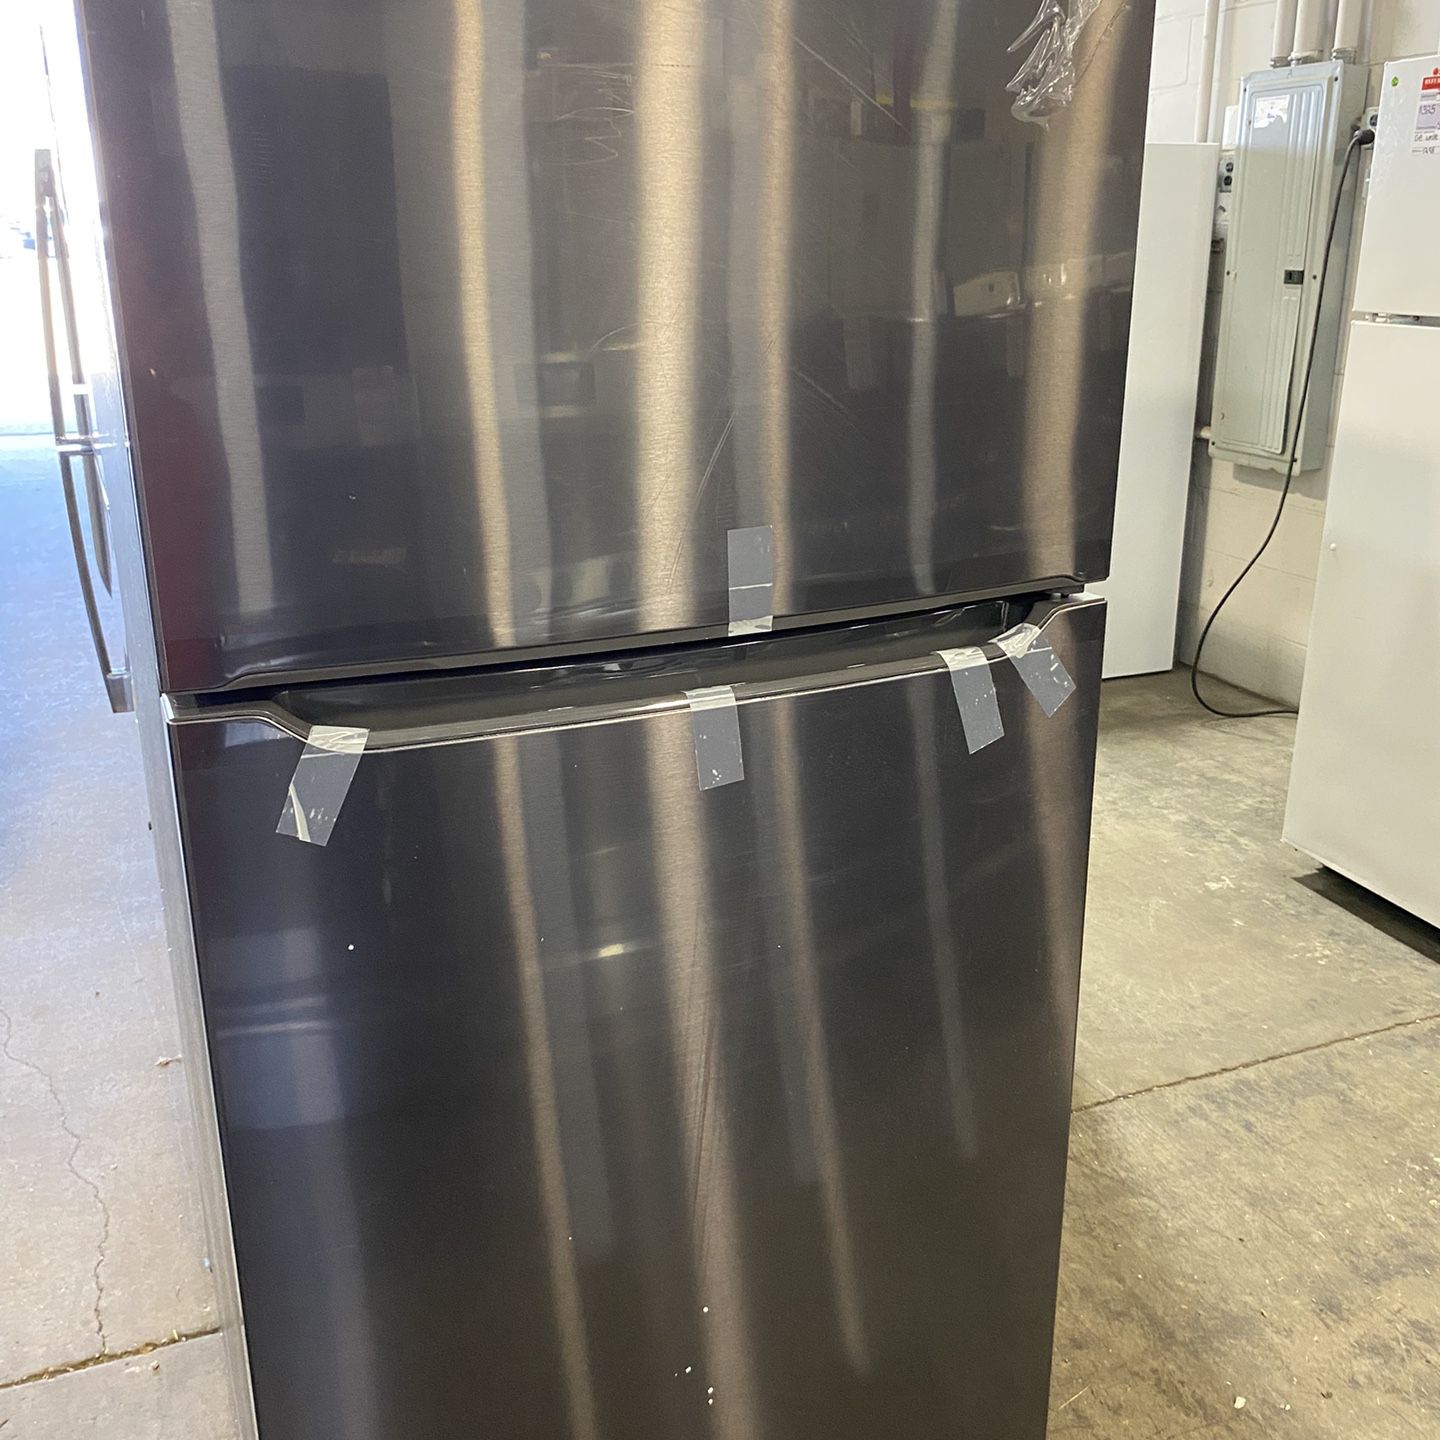 Black Stainless Refrigerator 